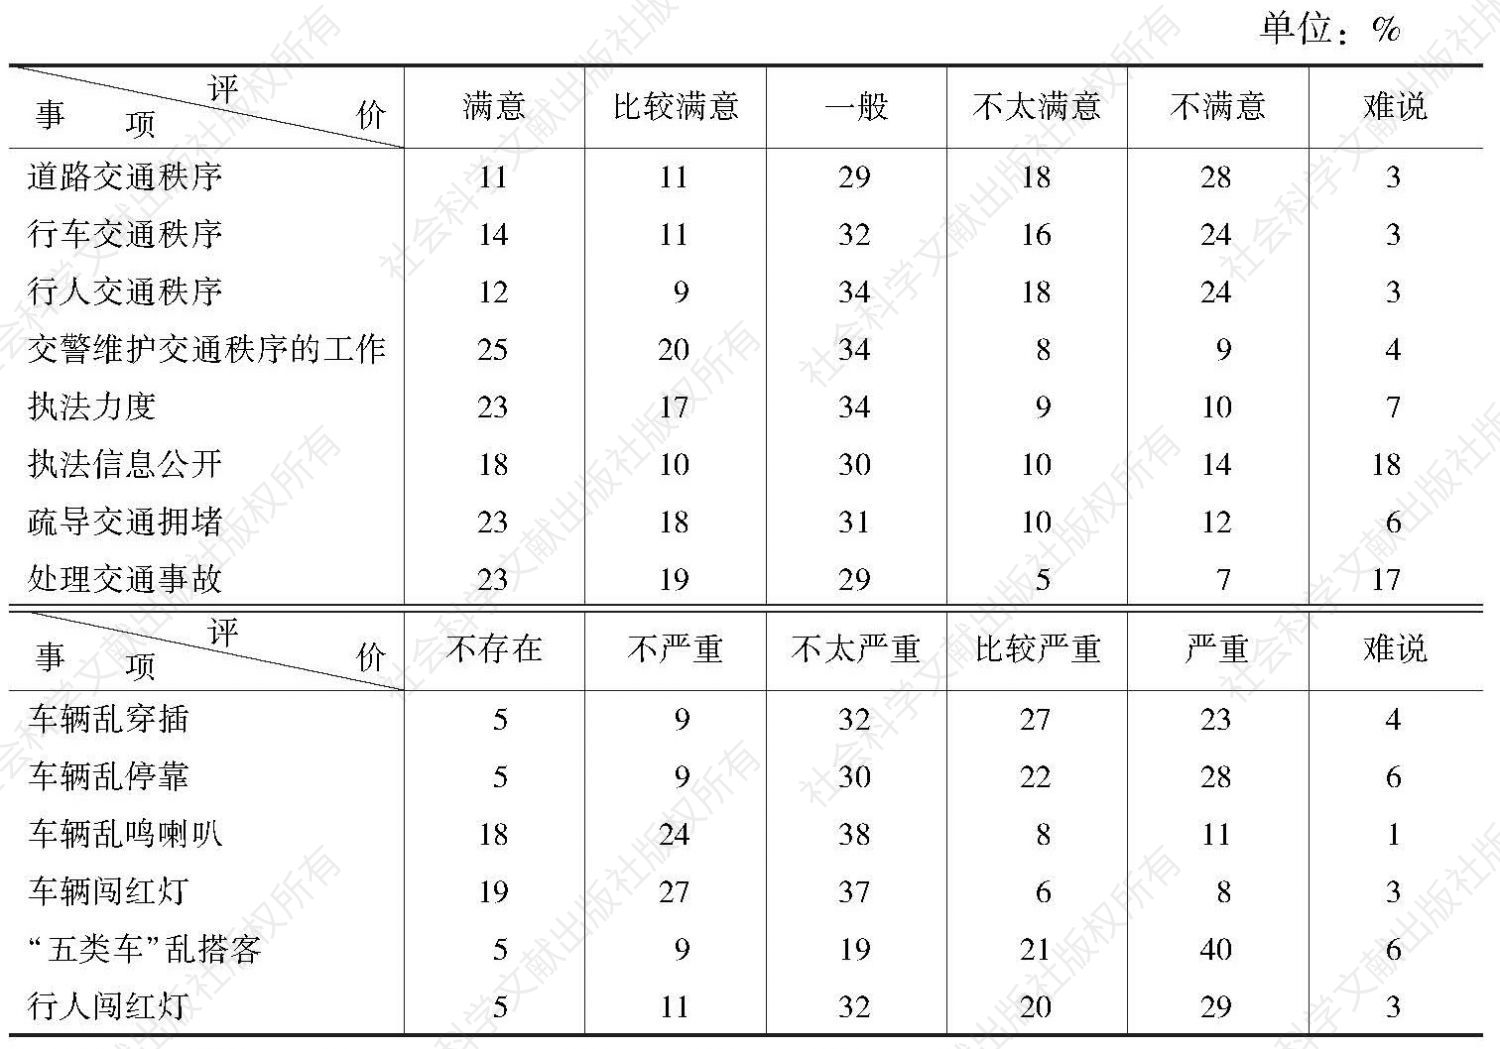 “交通秩序广州市民评价”民调数据